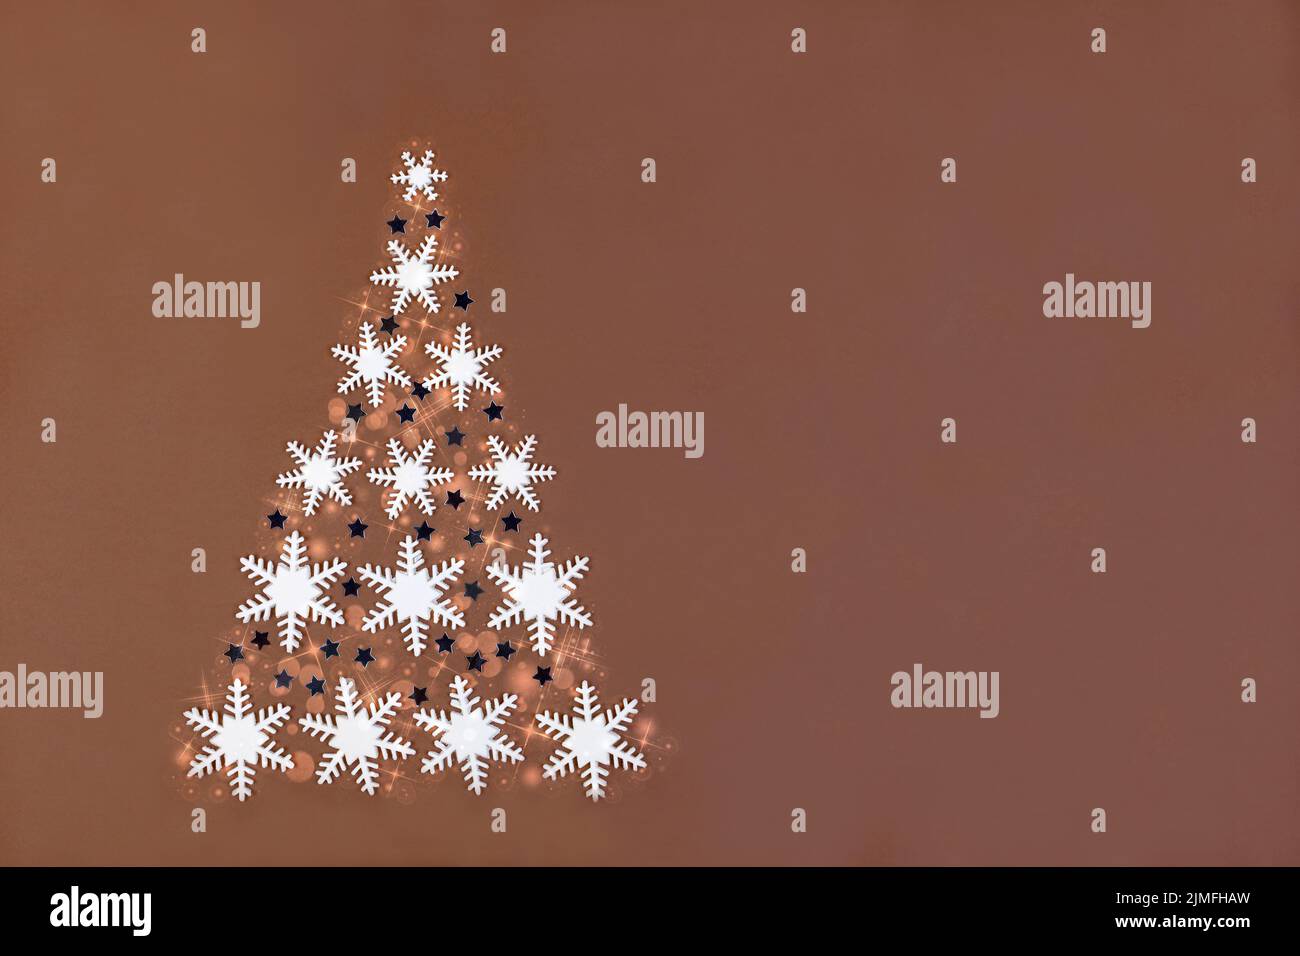 Alternative Christmas tree made of sugar snowflakes. Stock Photo